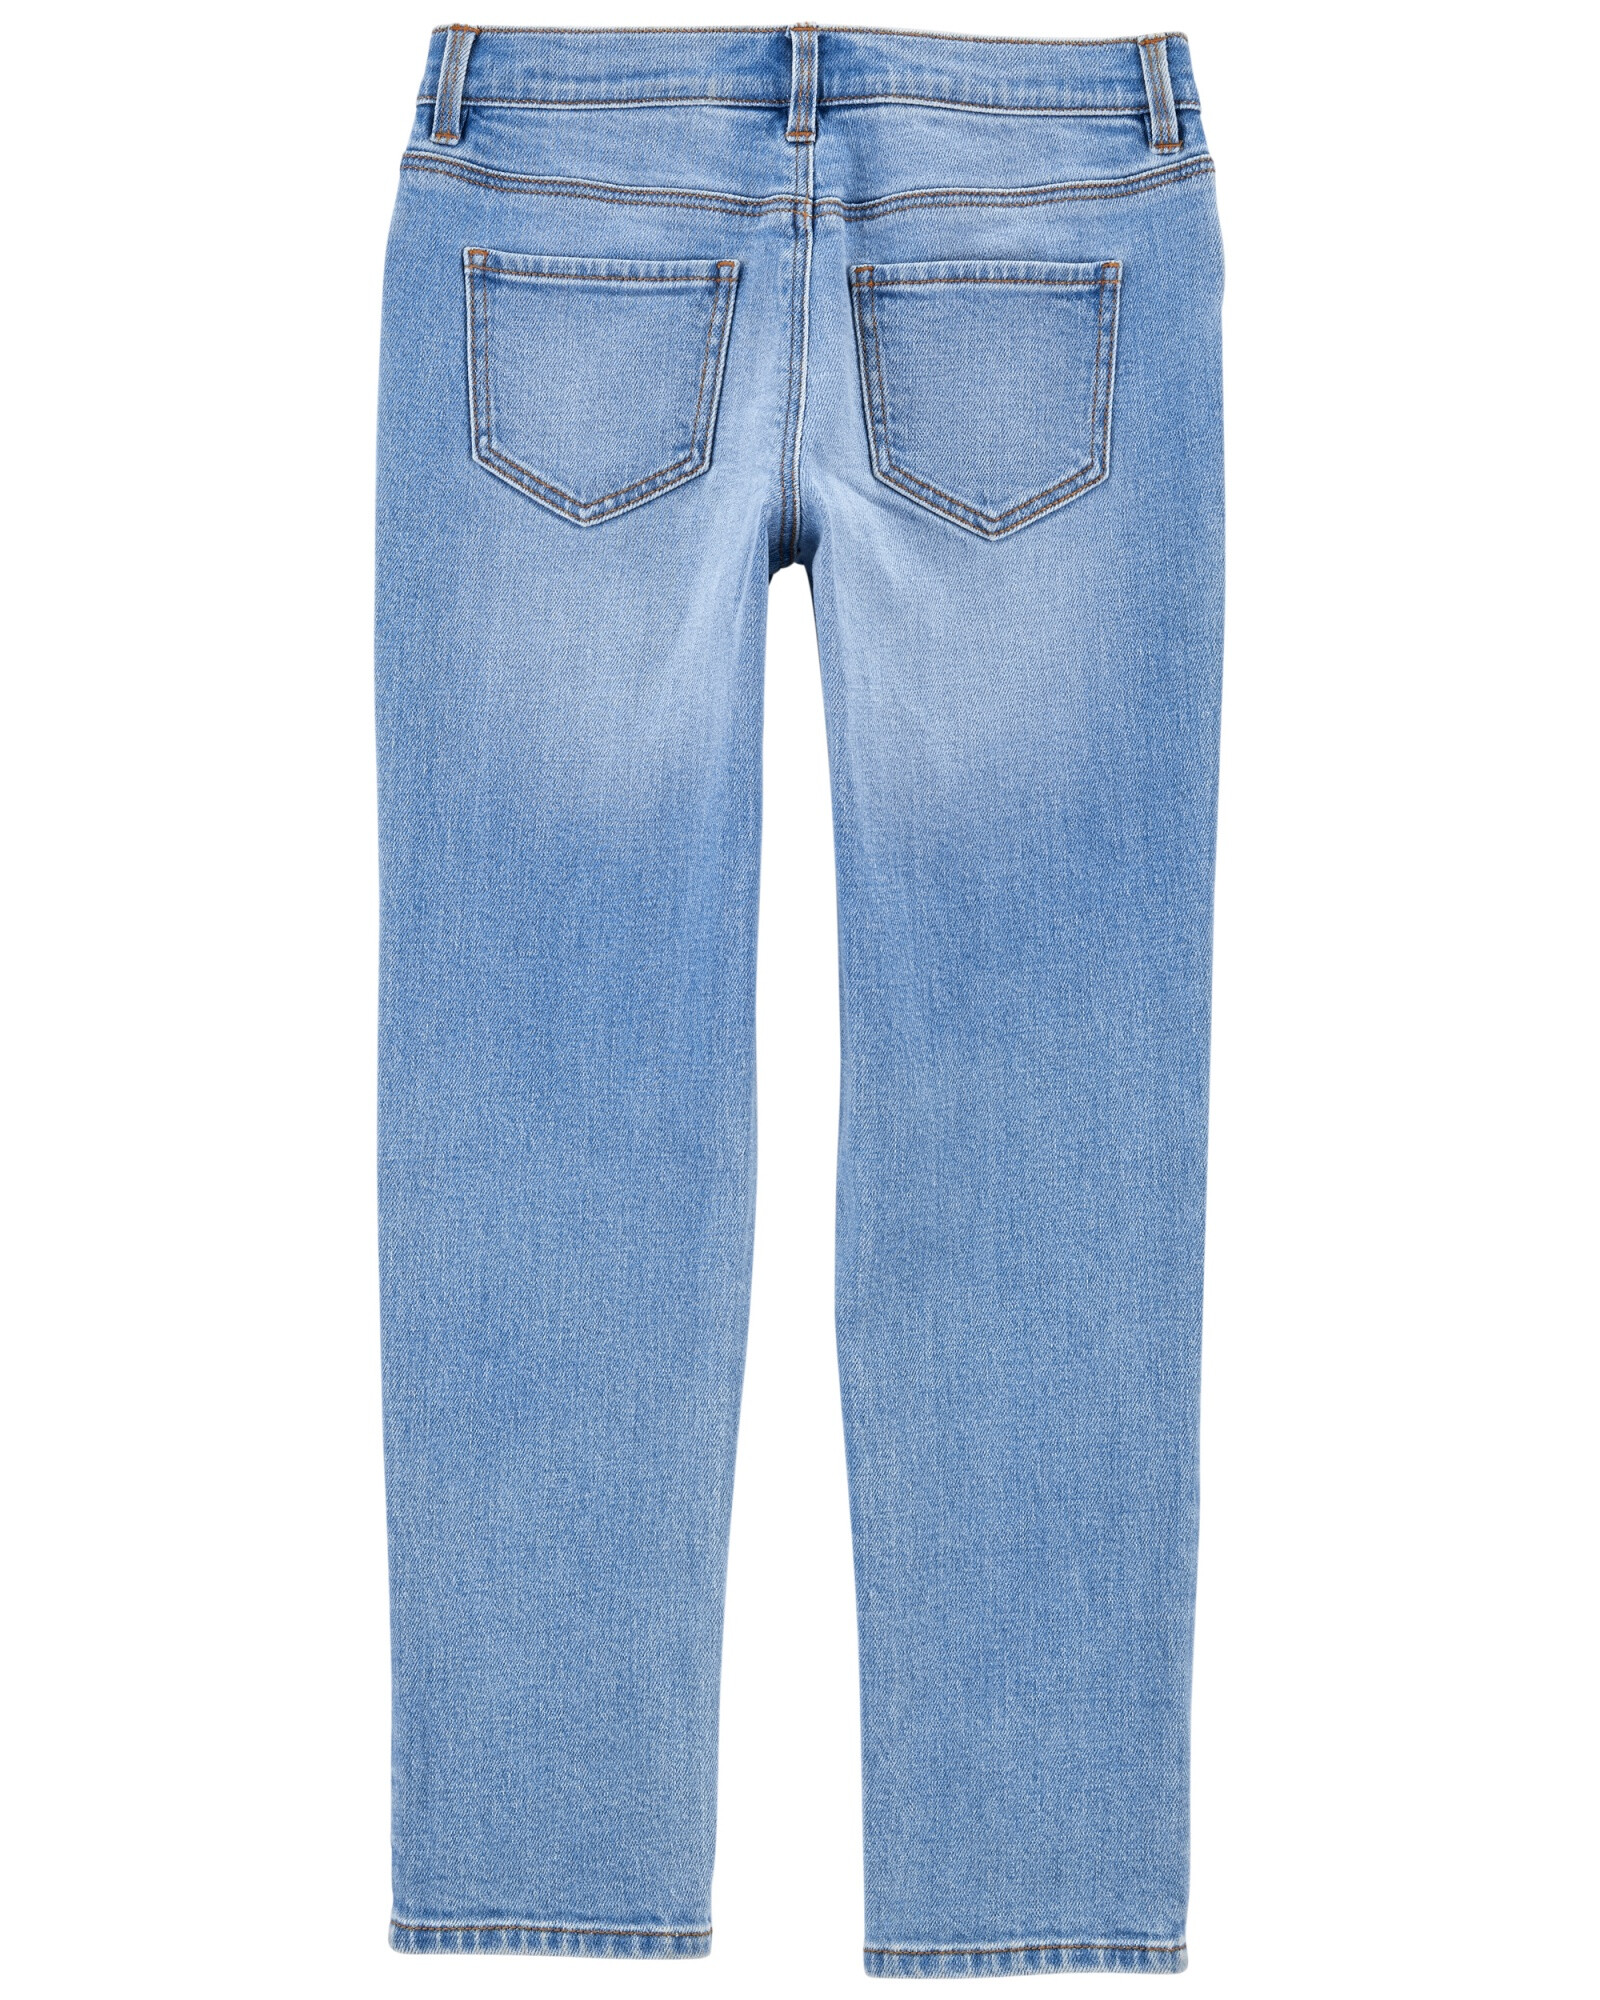 Pantalón de jean con detalles rasgados. Talles 6-8 Sin color